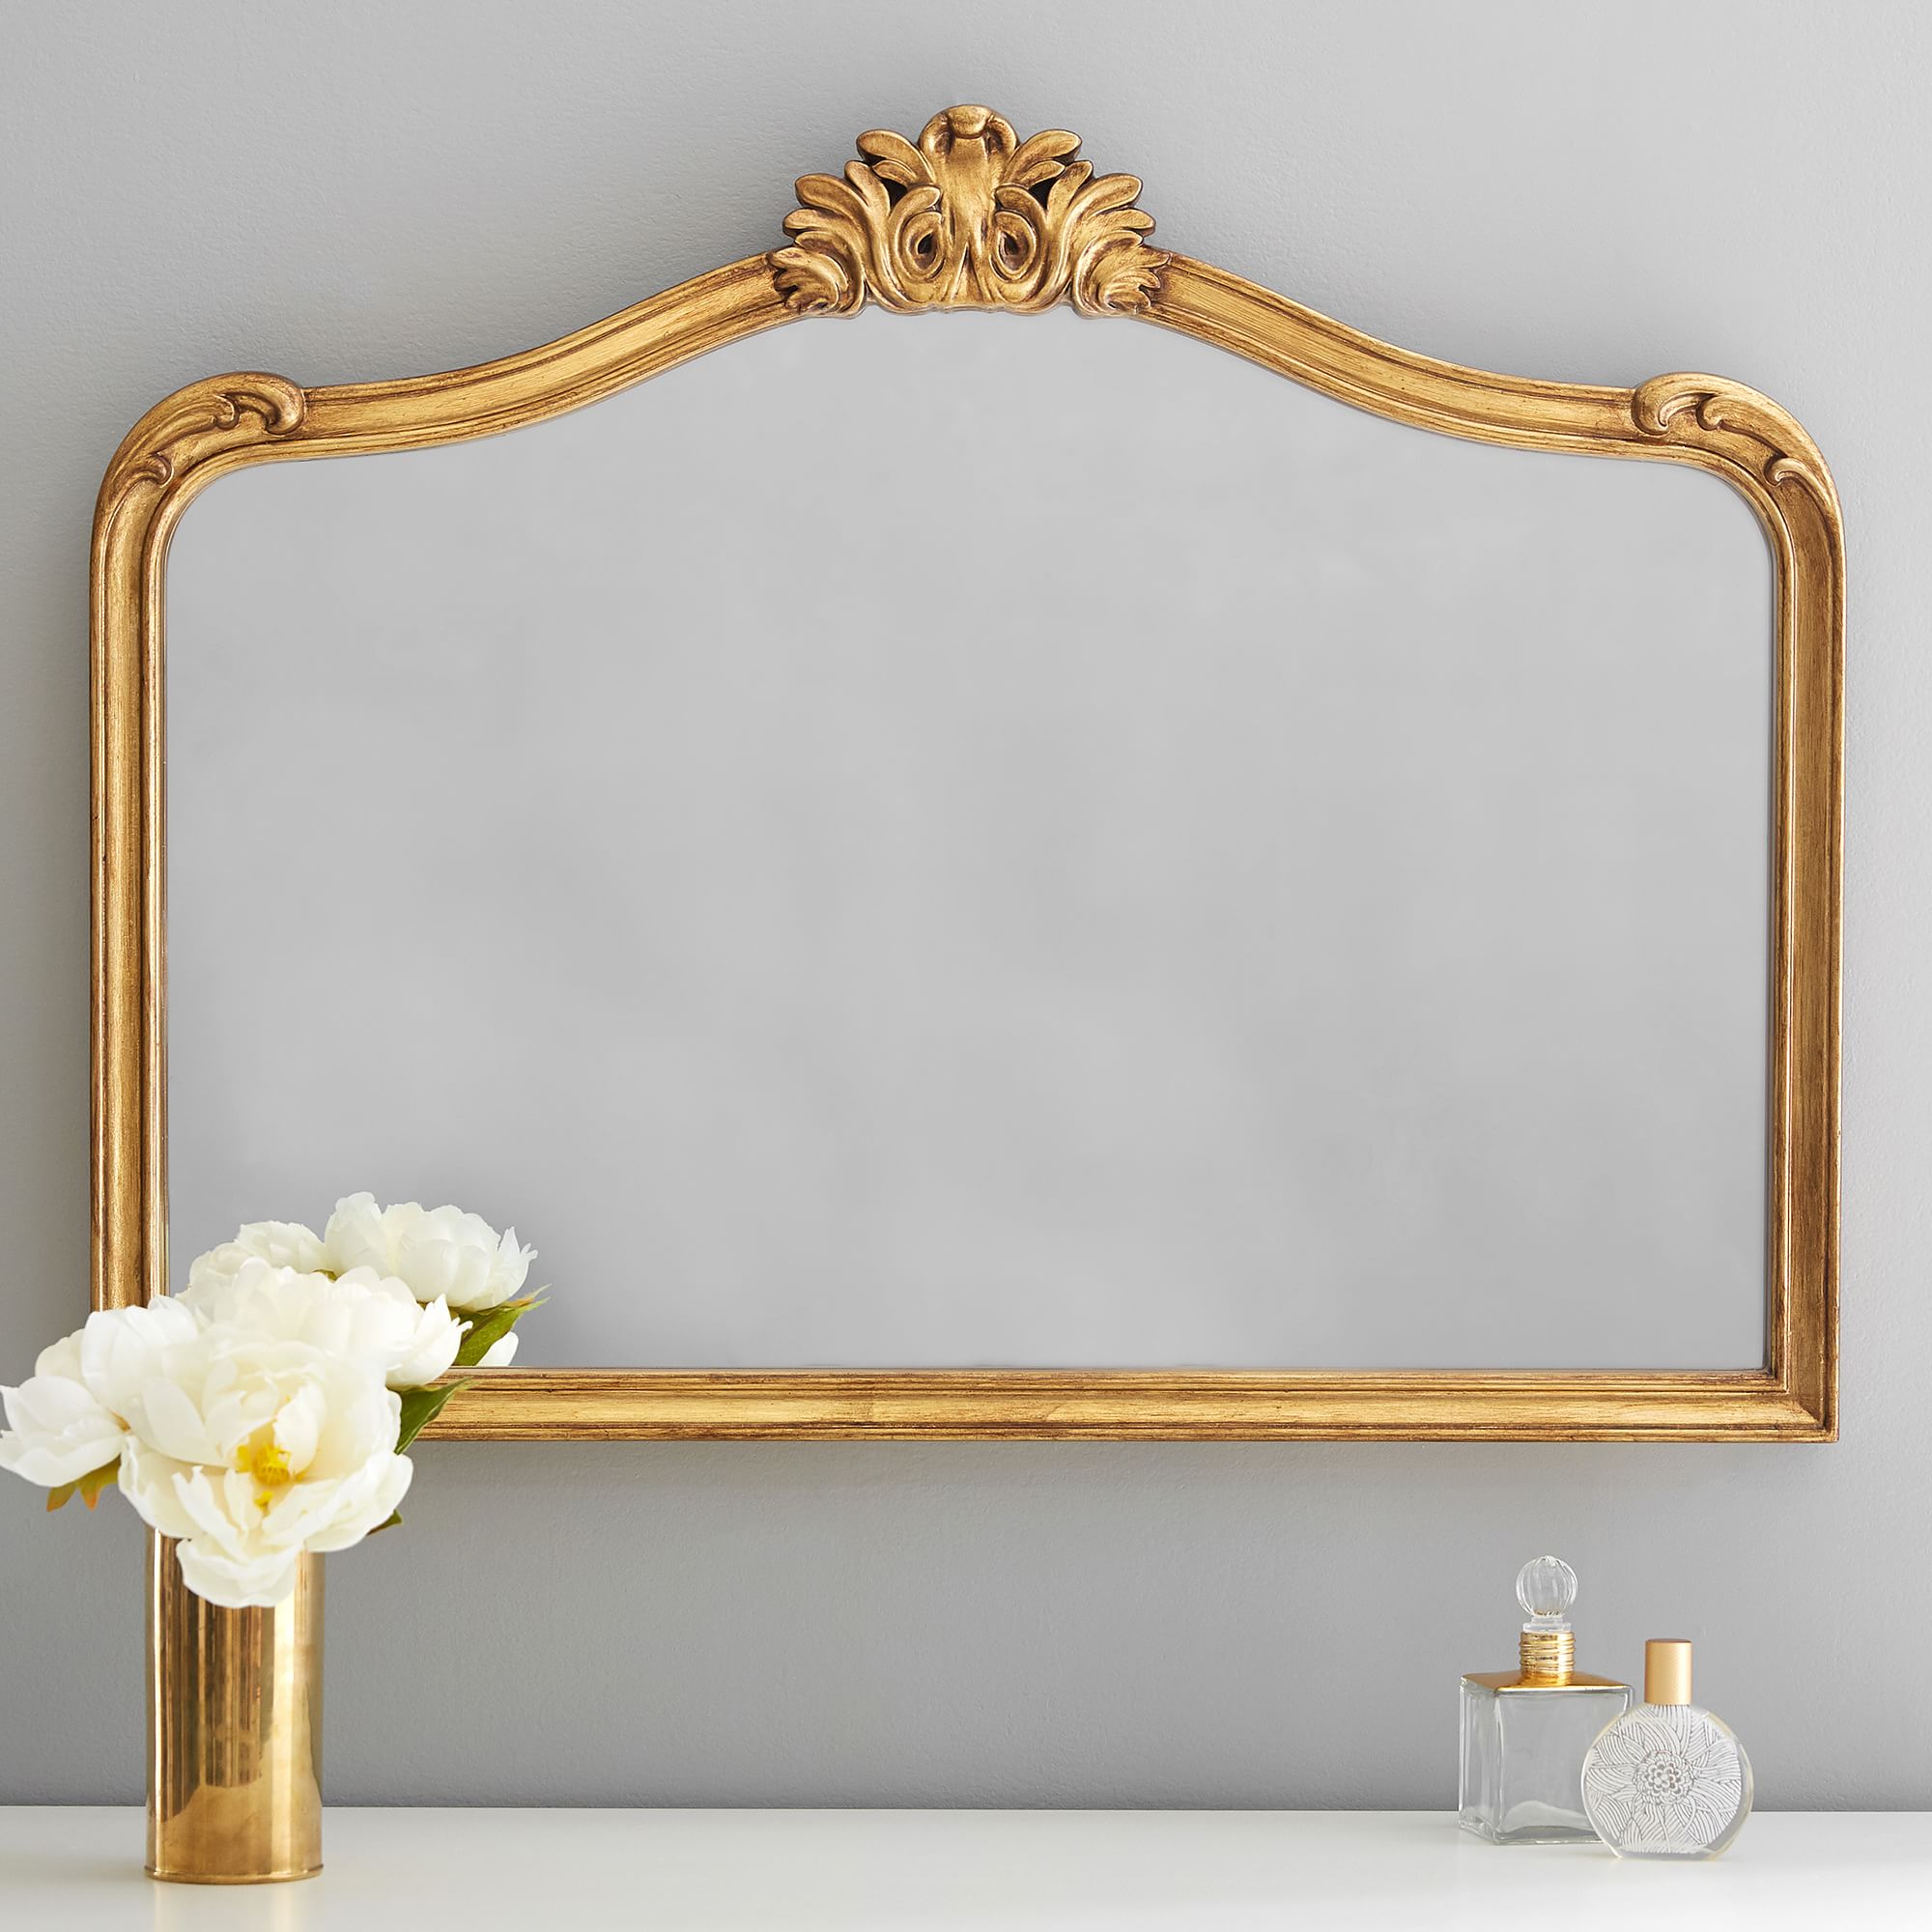 Alt image 1 for Ornate Filigree Mirrors